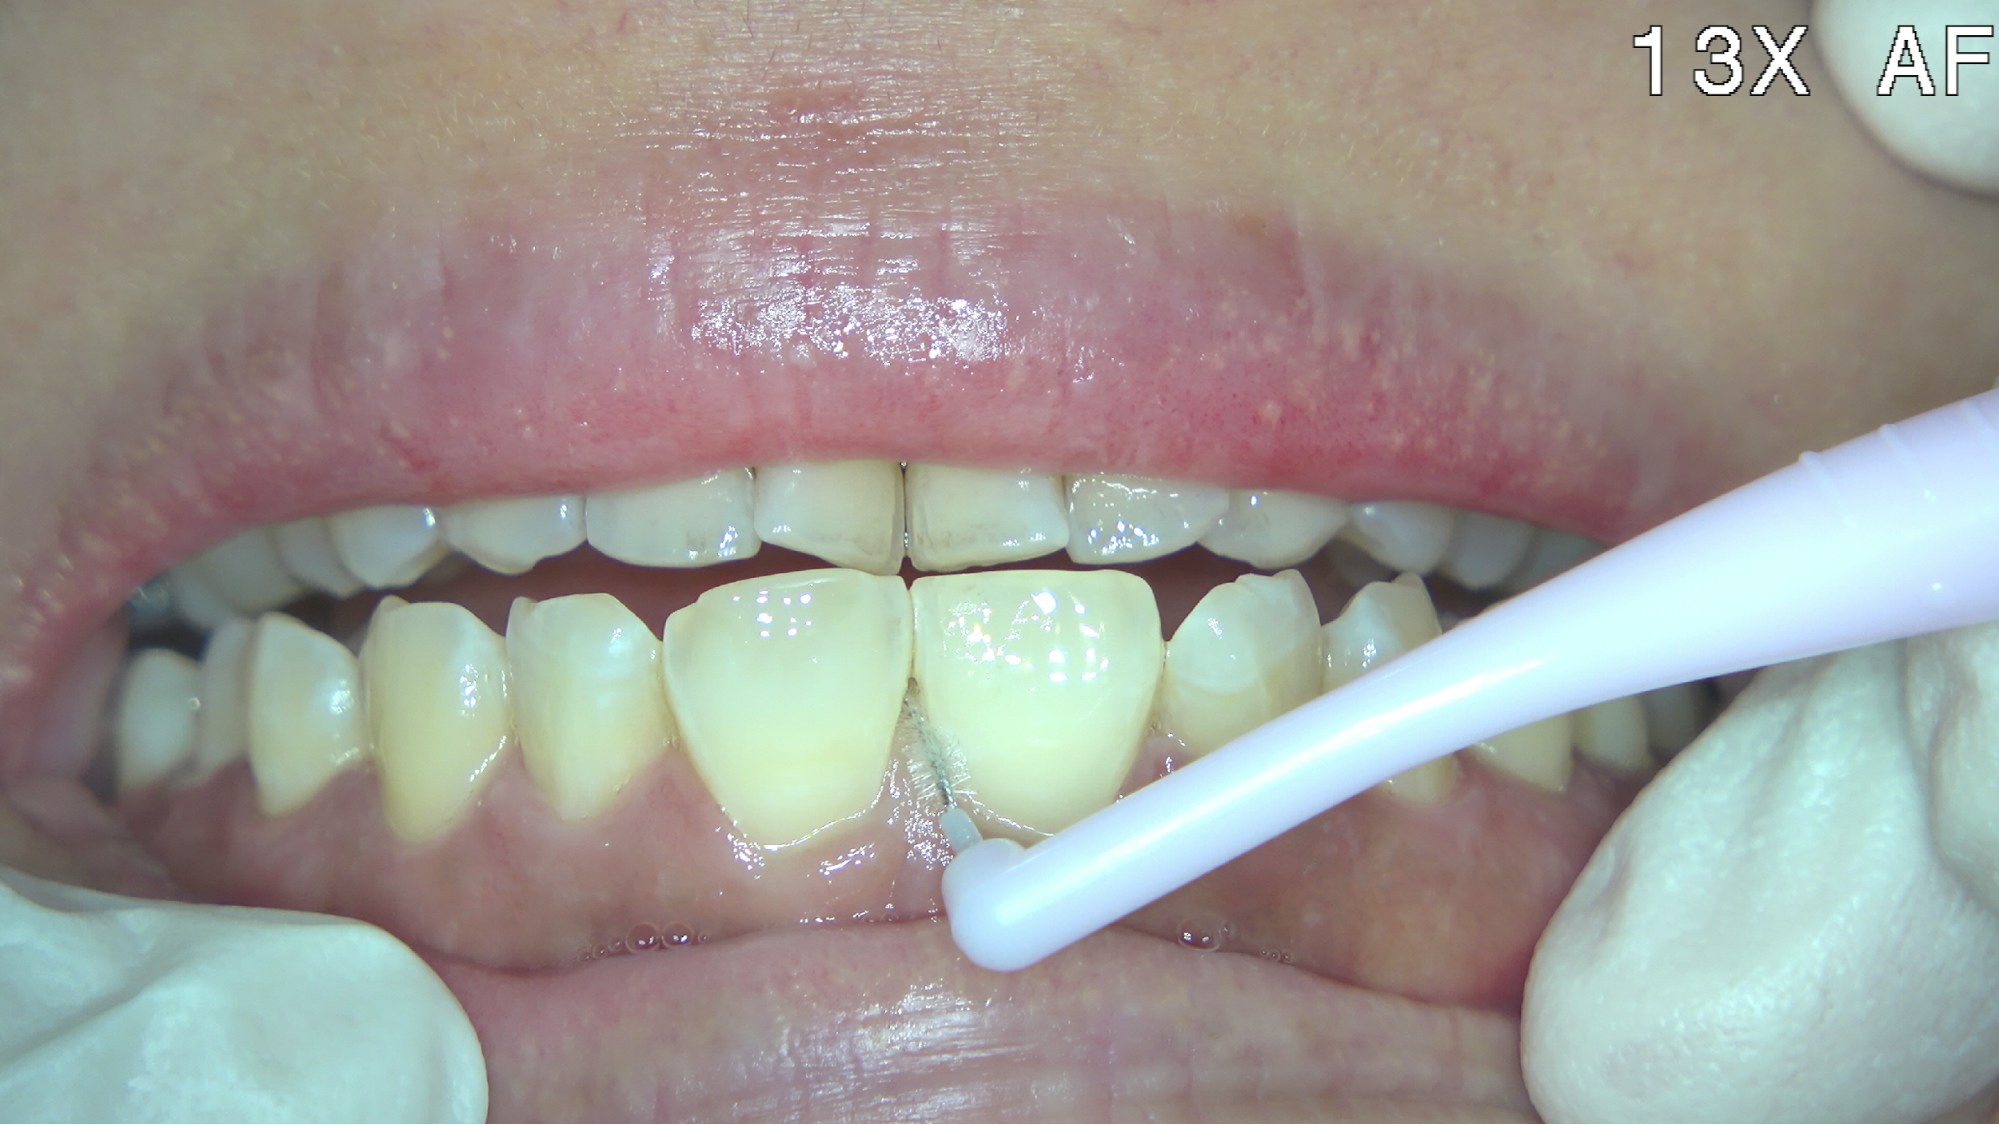 牙縫清潔可以使用牙縫刷或者牙線 
要清潔組成牙縫的左邊牙面以及右邊牙面
 也要顧及牙肉邊緣清潔